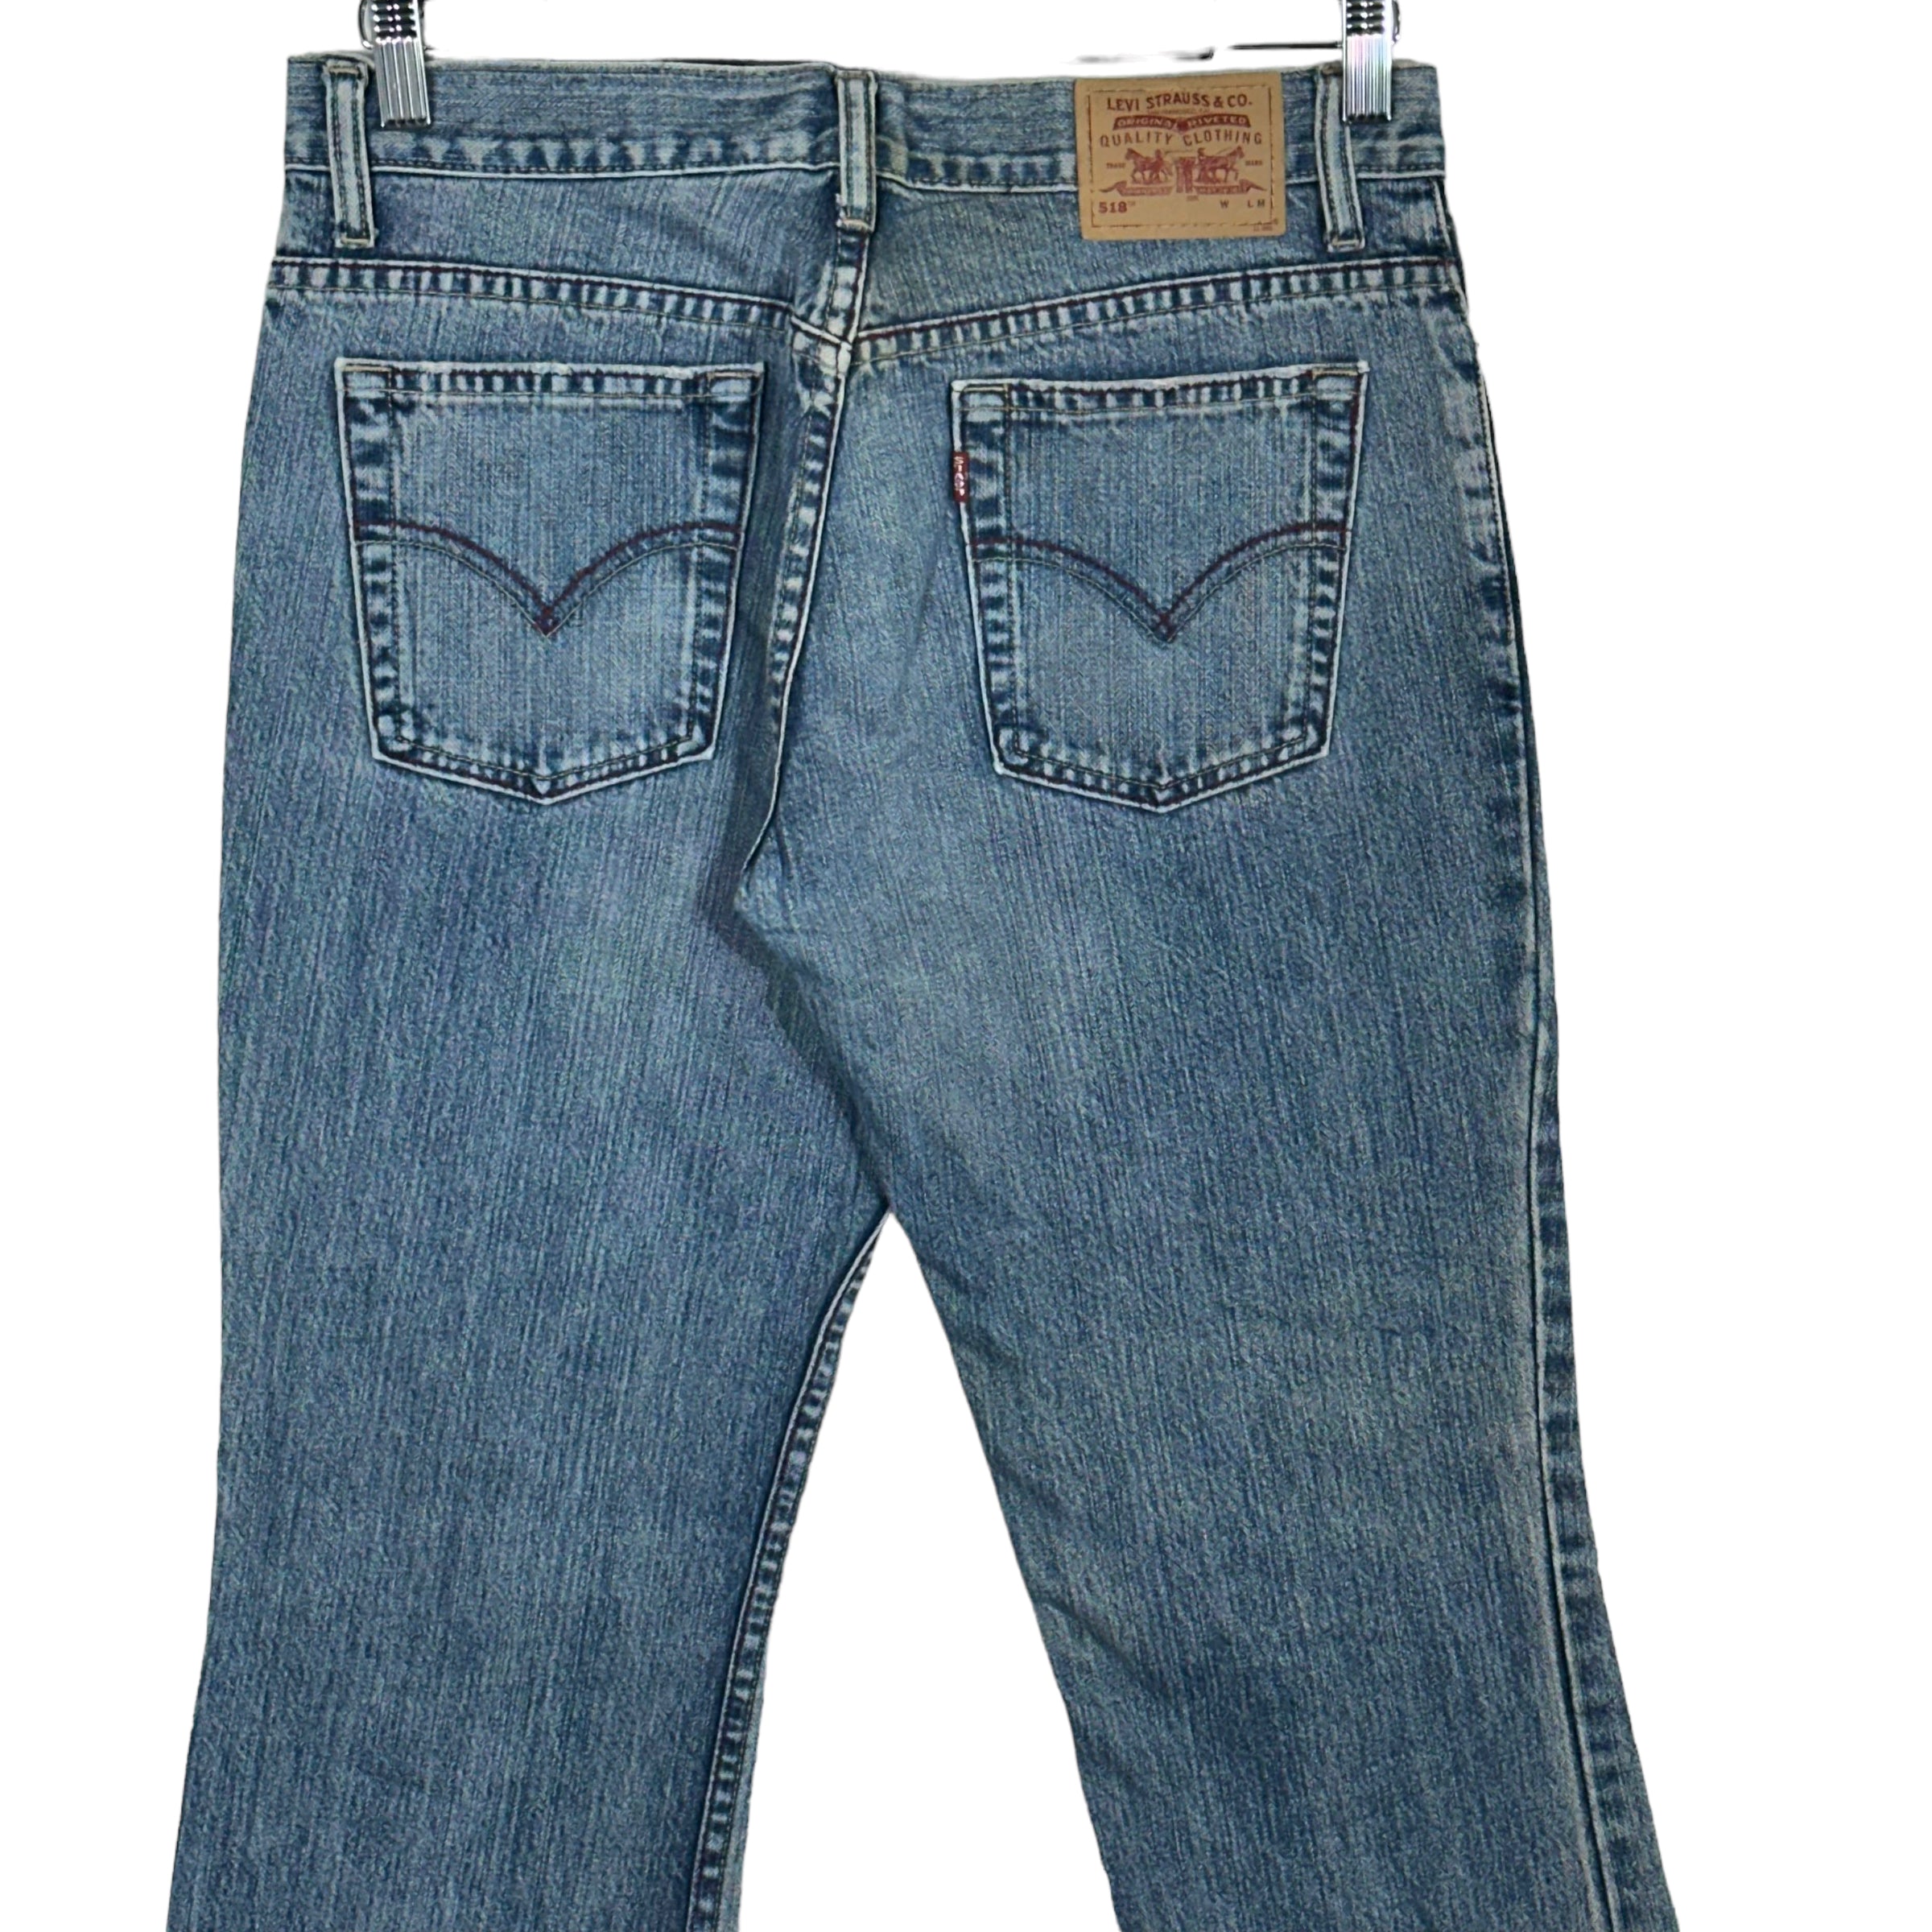 Vintage Levi's 518 Denim Jeans 90s